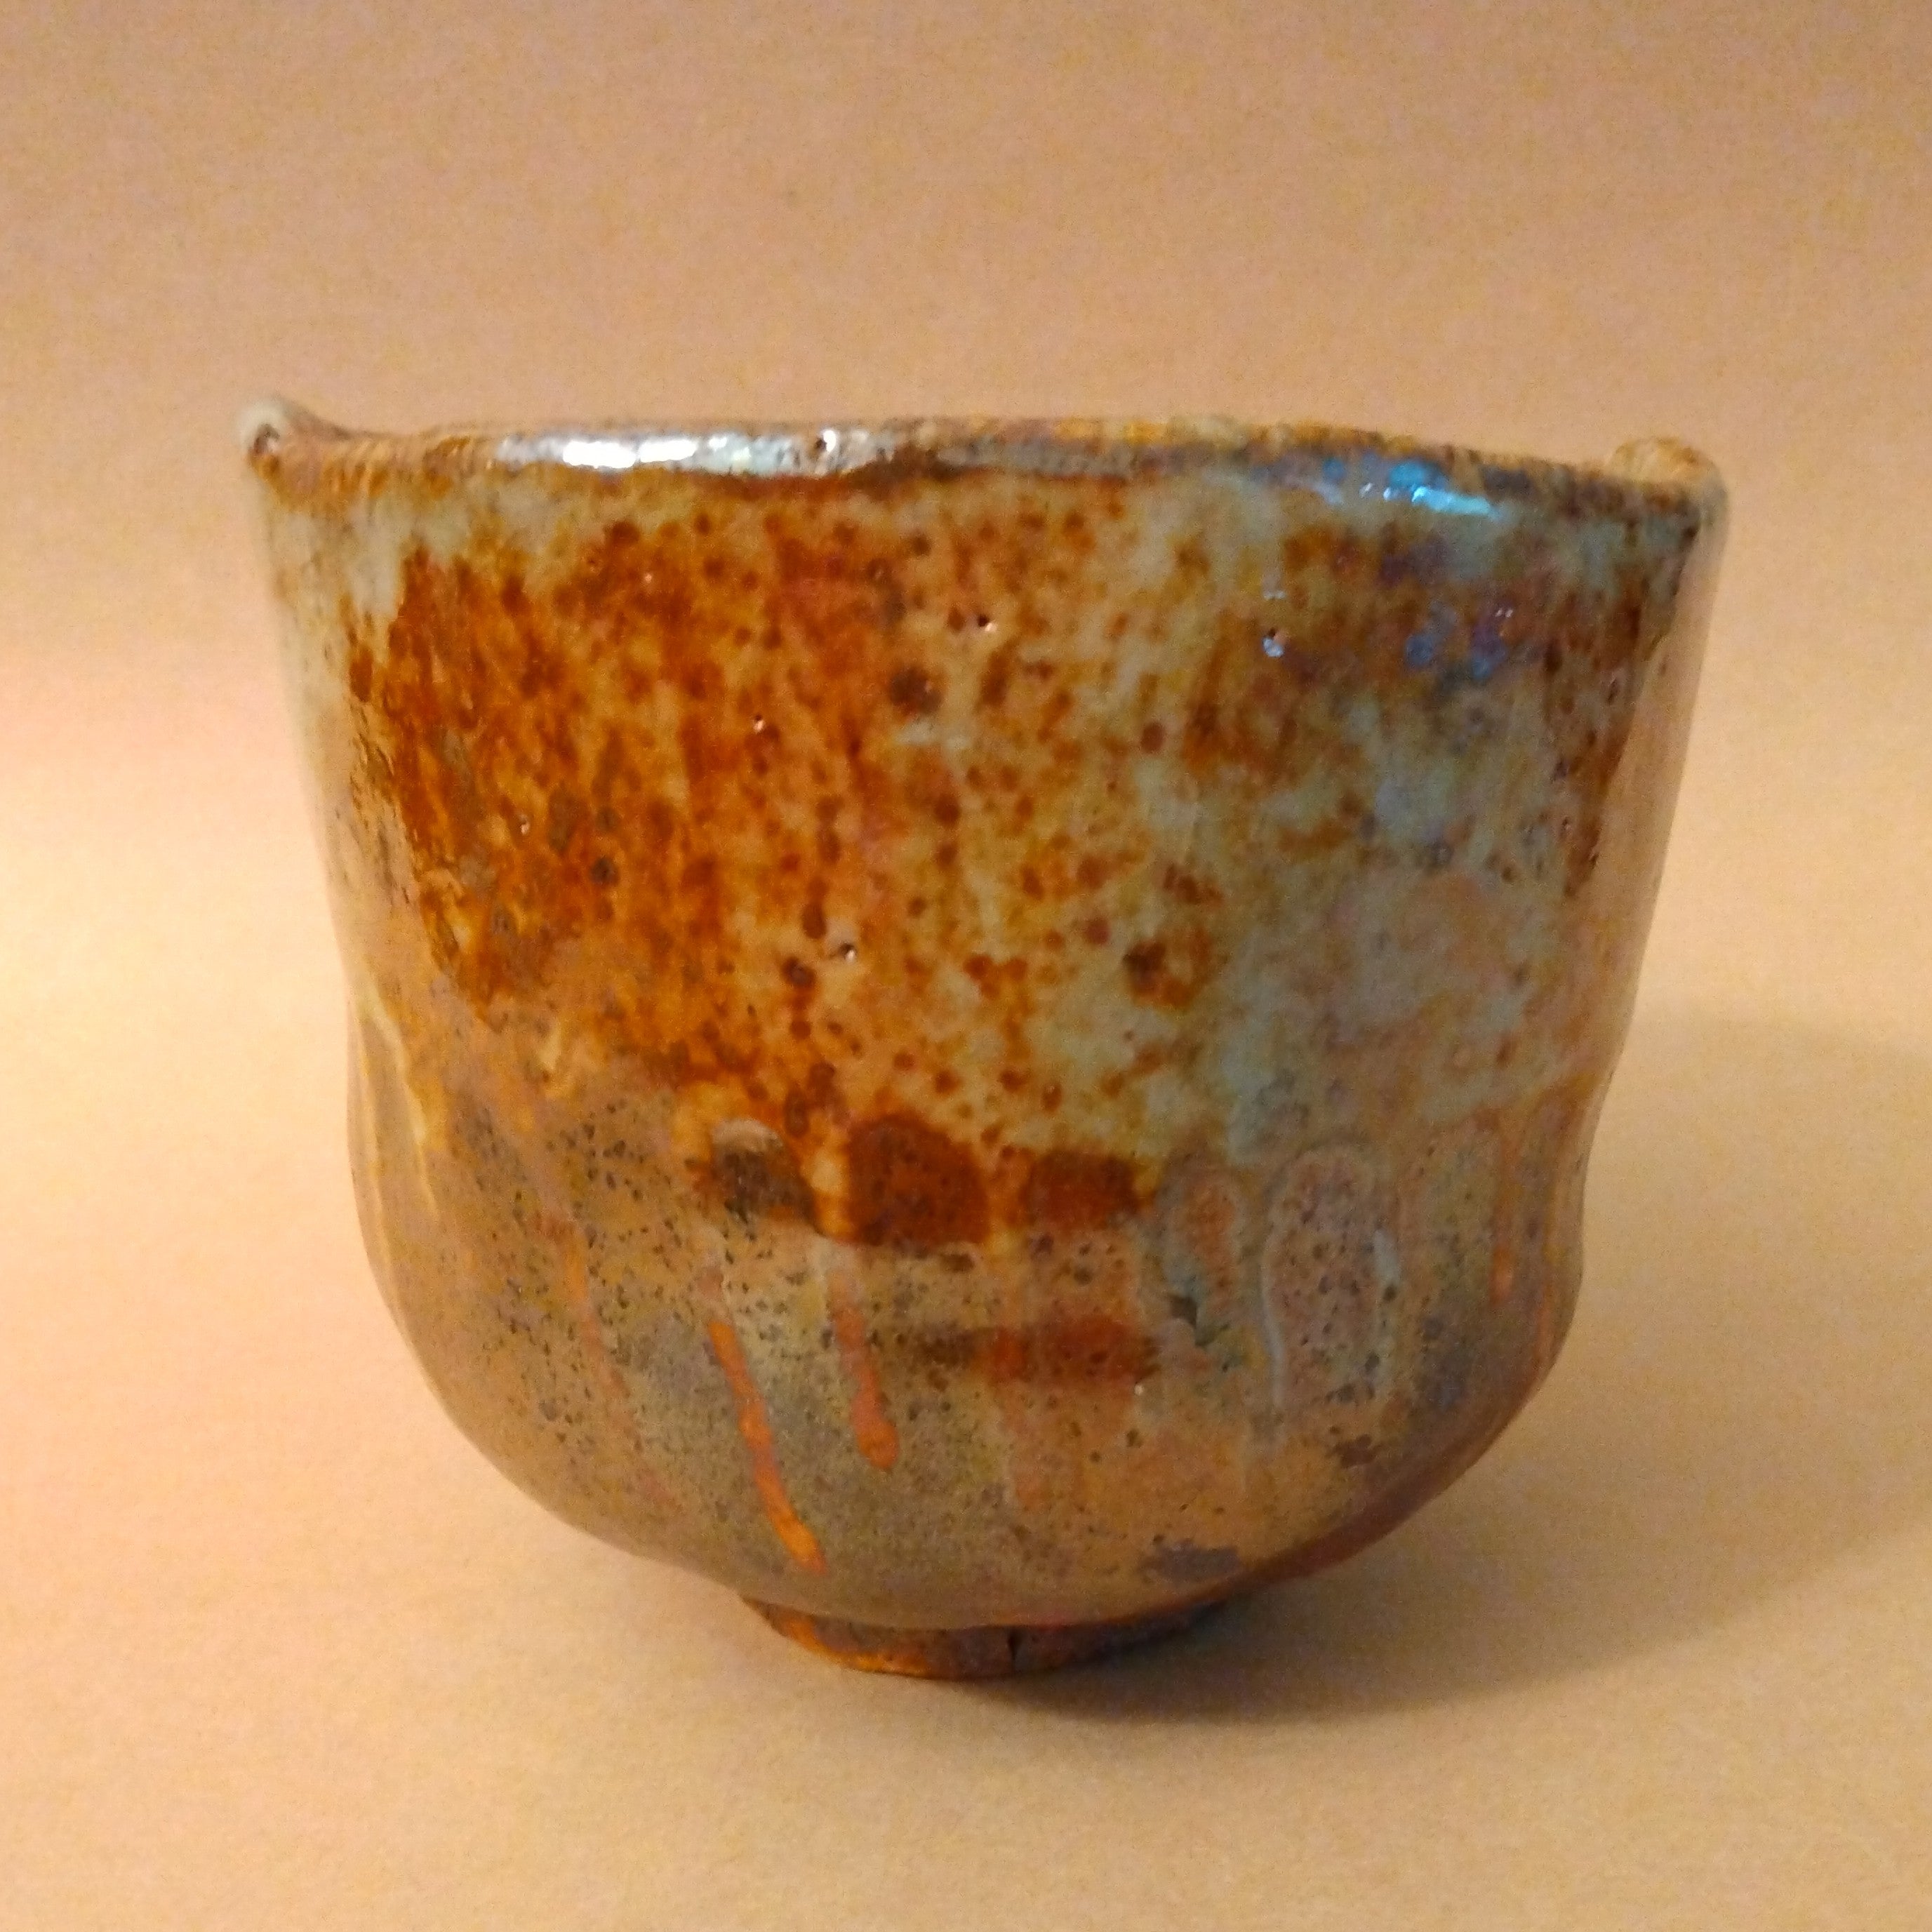 Tsutsu-gata (Cylinder-shaped) Tea Bowl, Matcha Chawan, by George Gledhill